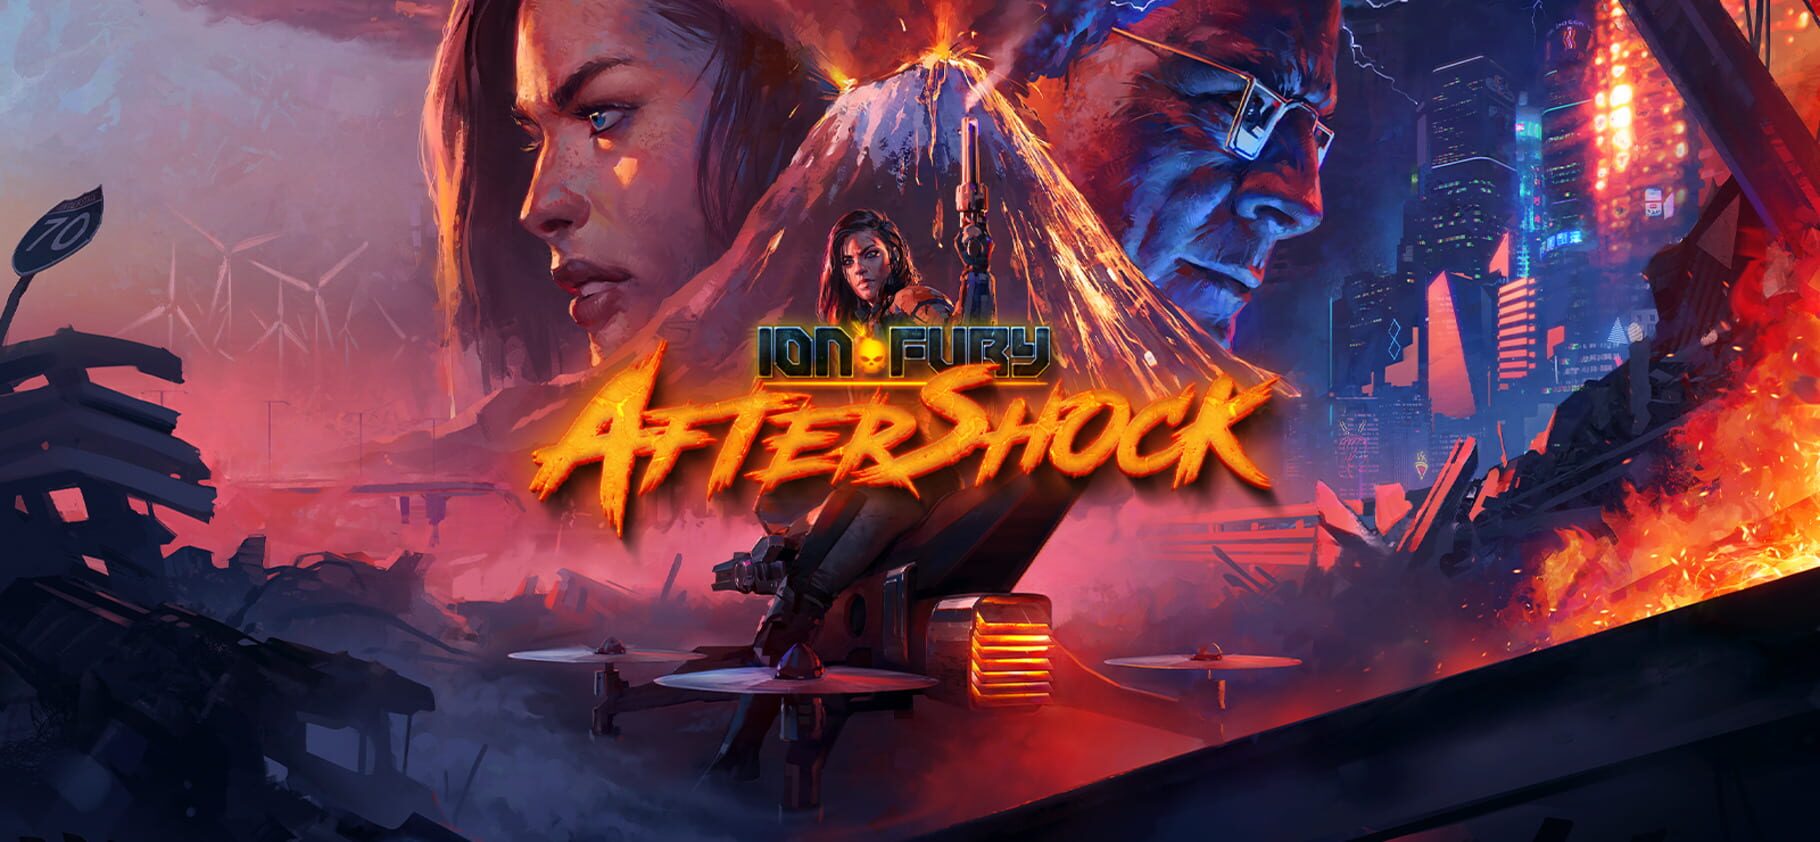 Ion Fury: Aftershock artwork